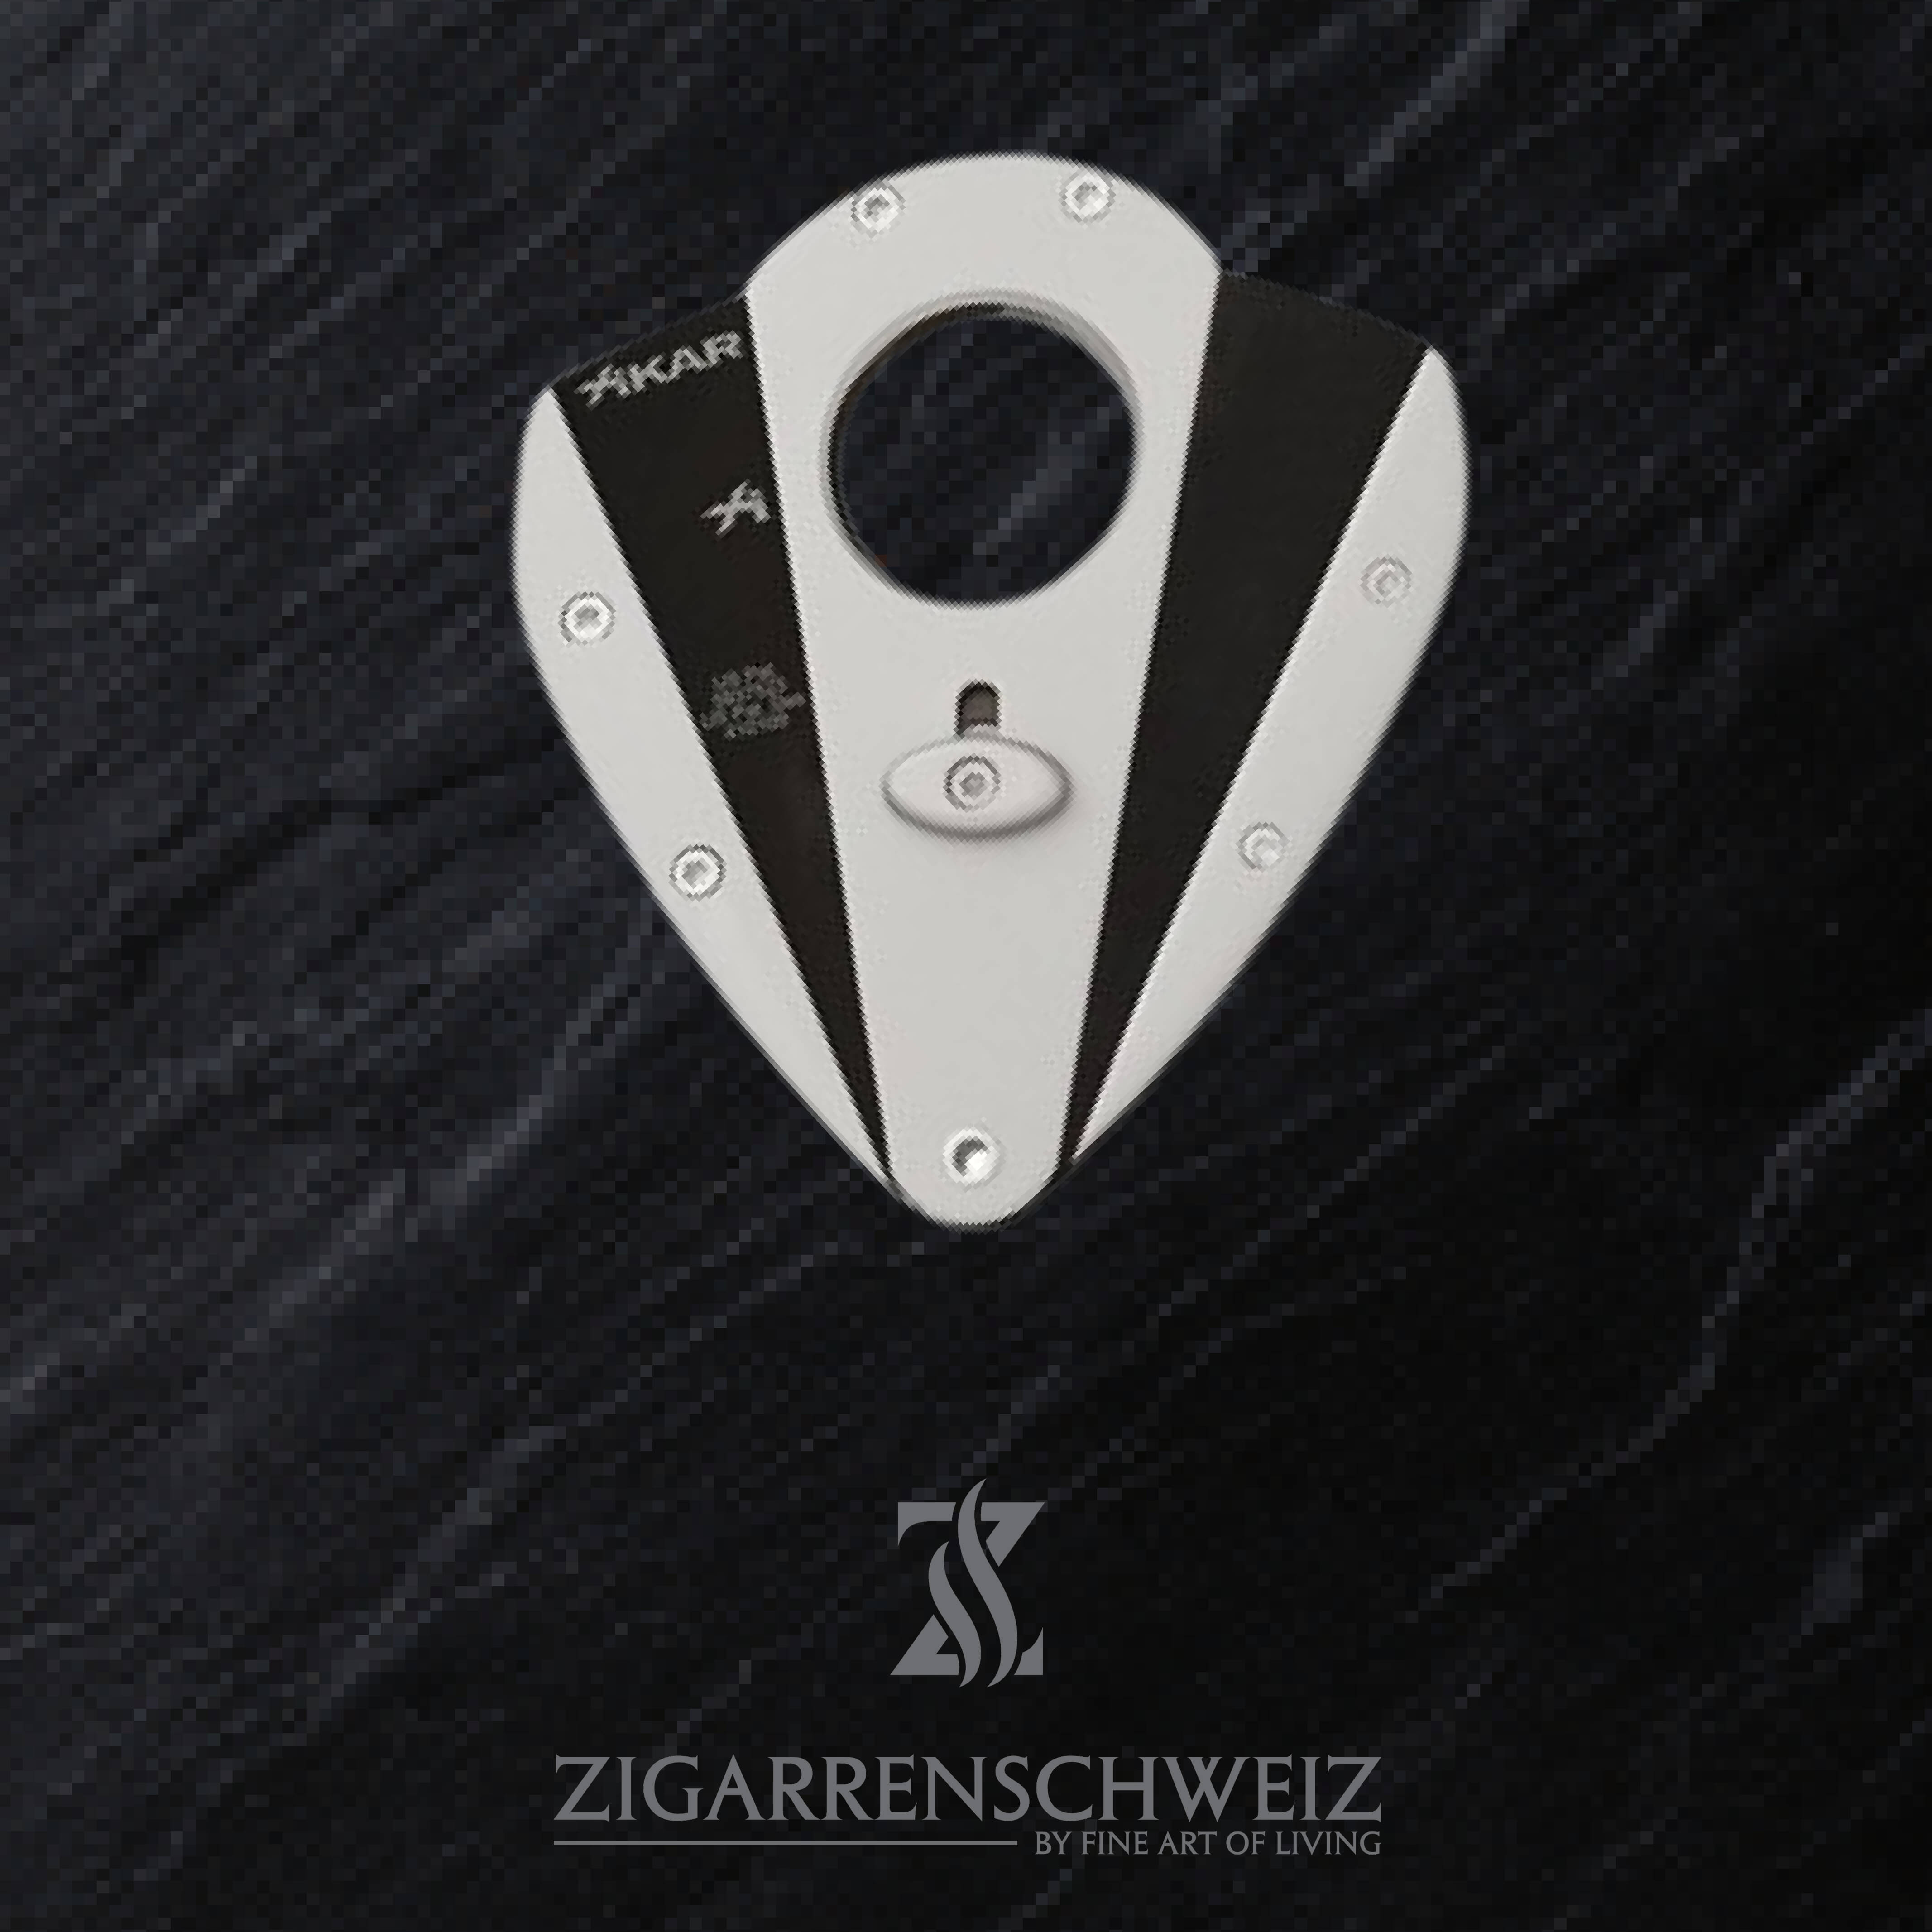 Xikar Xi1 Zigarren Cutter Farbe: Silber, Klingen Farbe: Schwarz, geöffnet